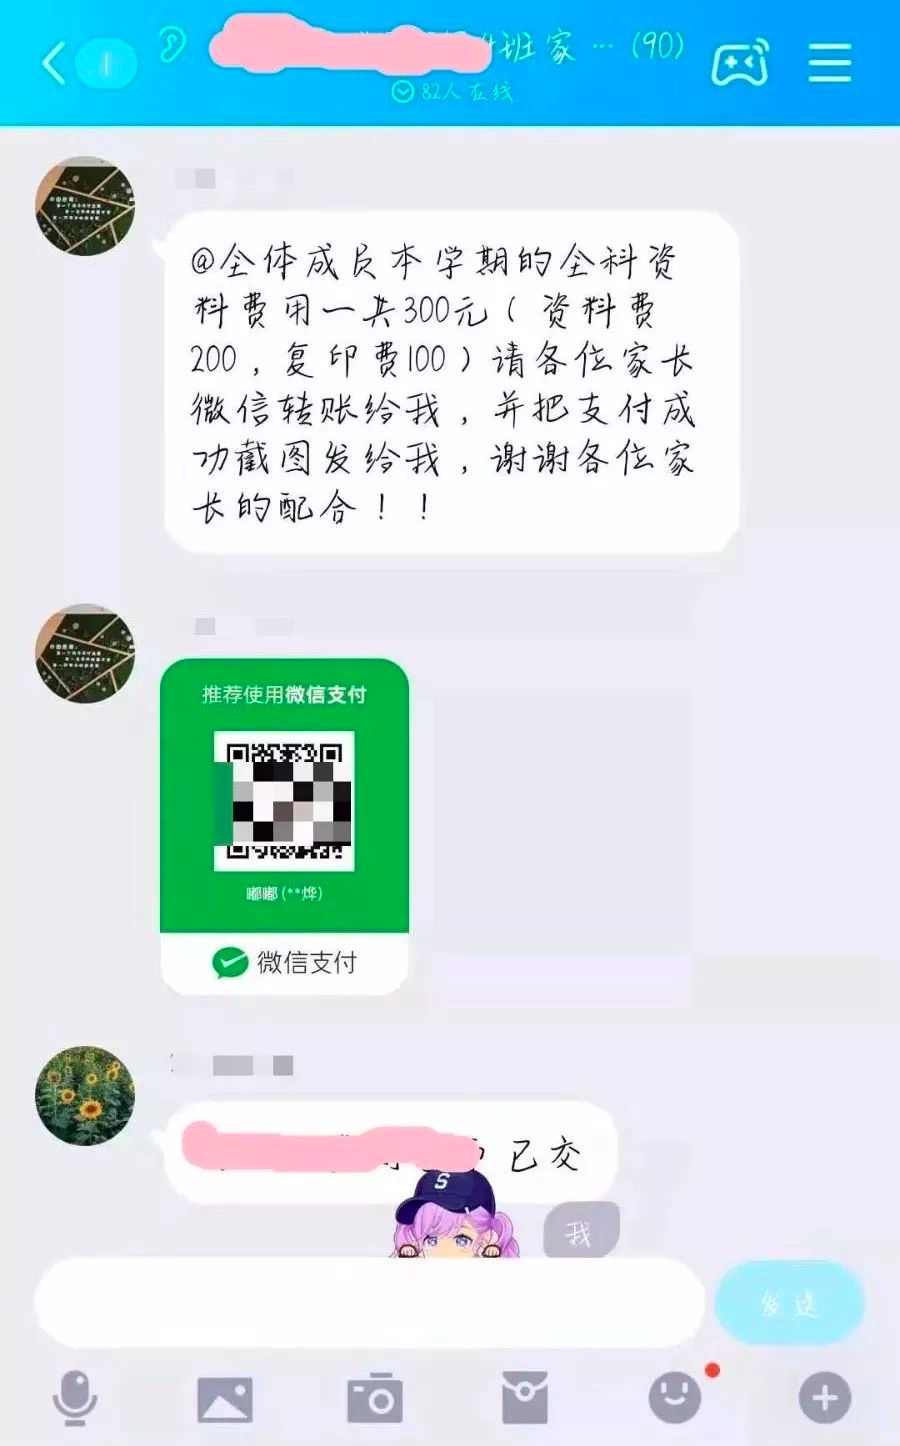 “班主任”上课时间班级群内收费，北京警方提醒有诈